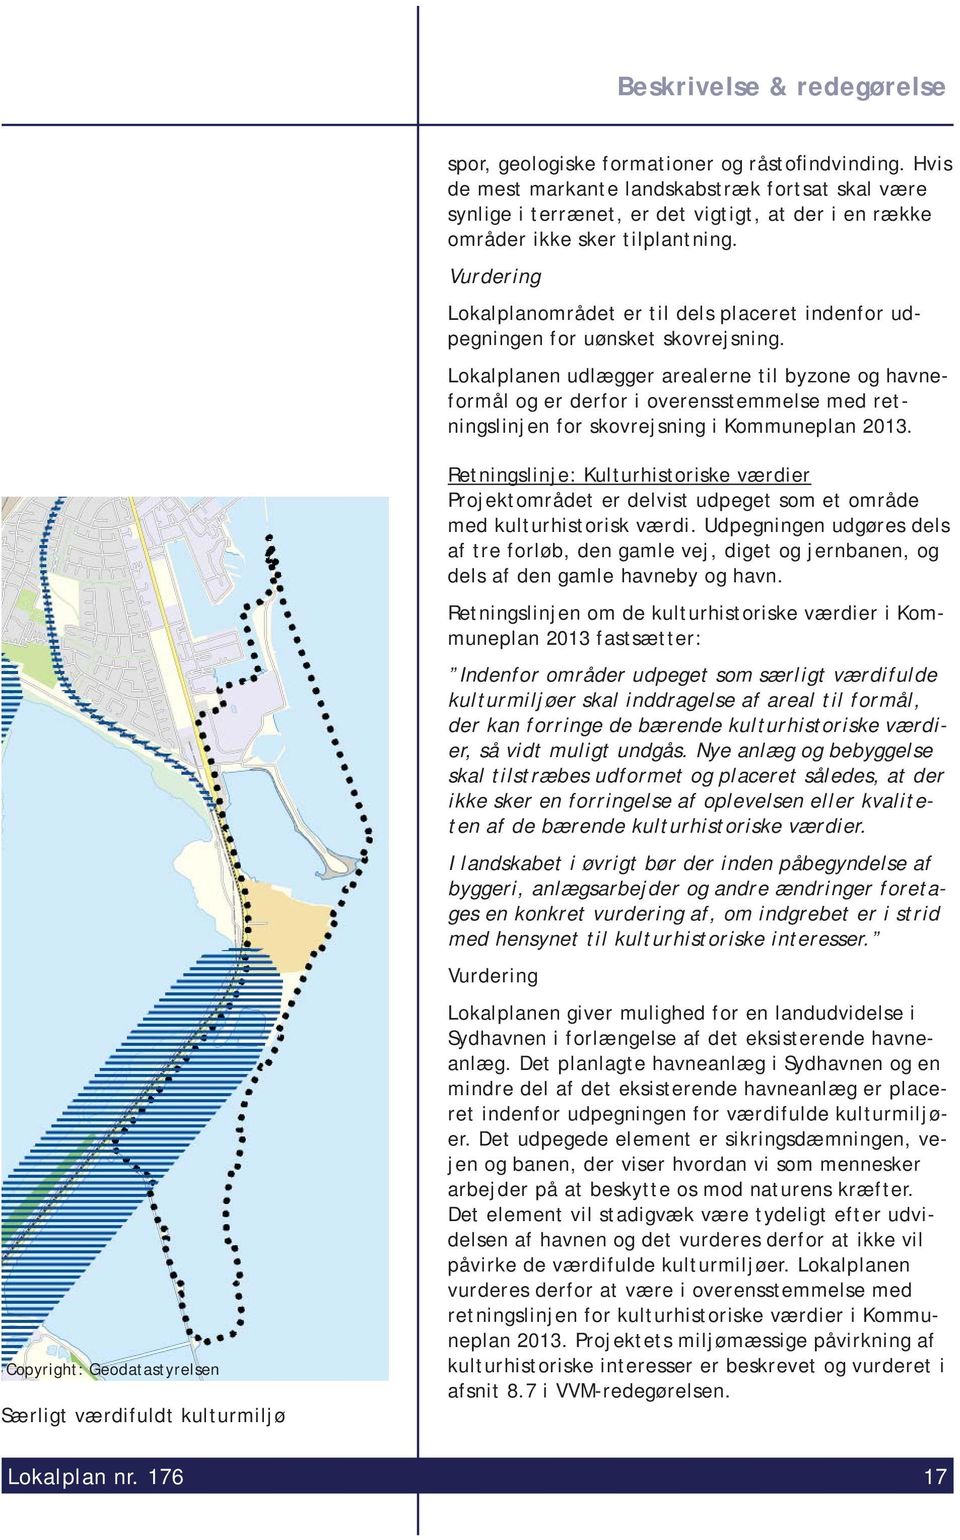 Lokalplanen udlægger arealerne til byzone og havneformål og er derfor i overensstemmelse med retningslinjen for skovrejsning i Kommuneplan 2013.